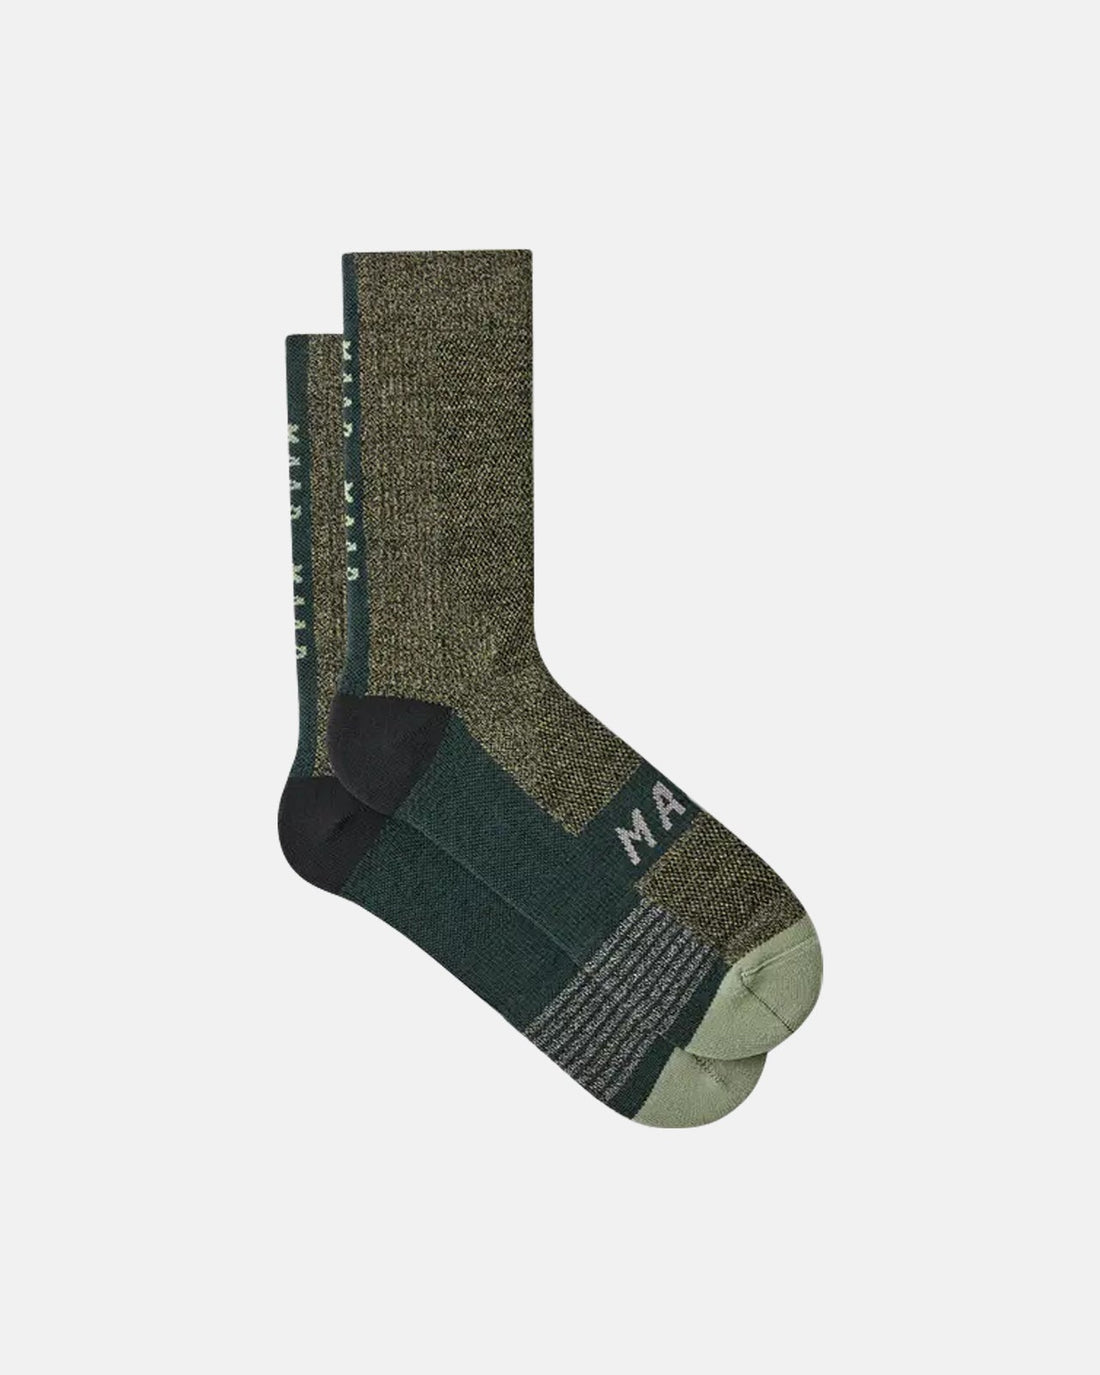 MAAP Alt_Road Merino Space Dye Sock - Lichen